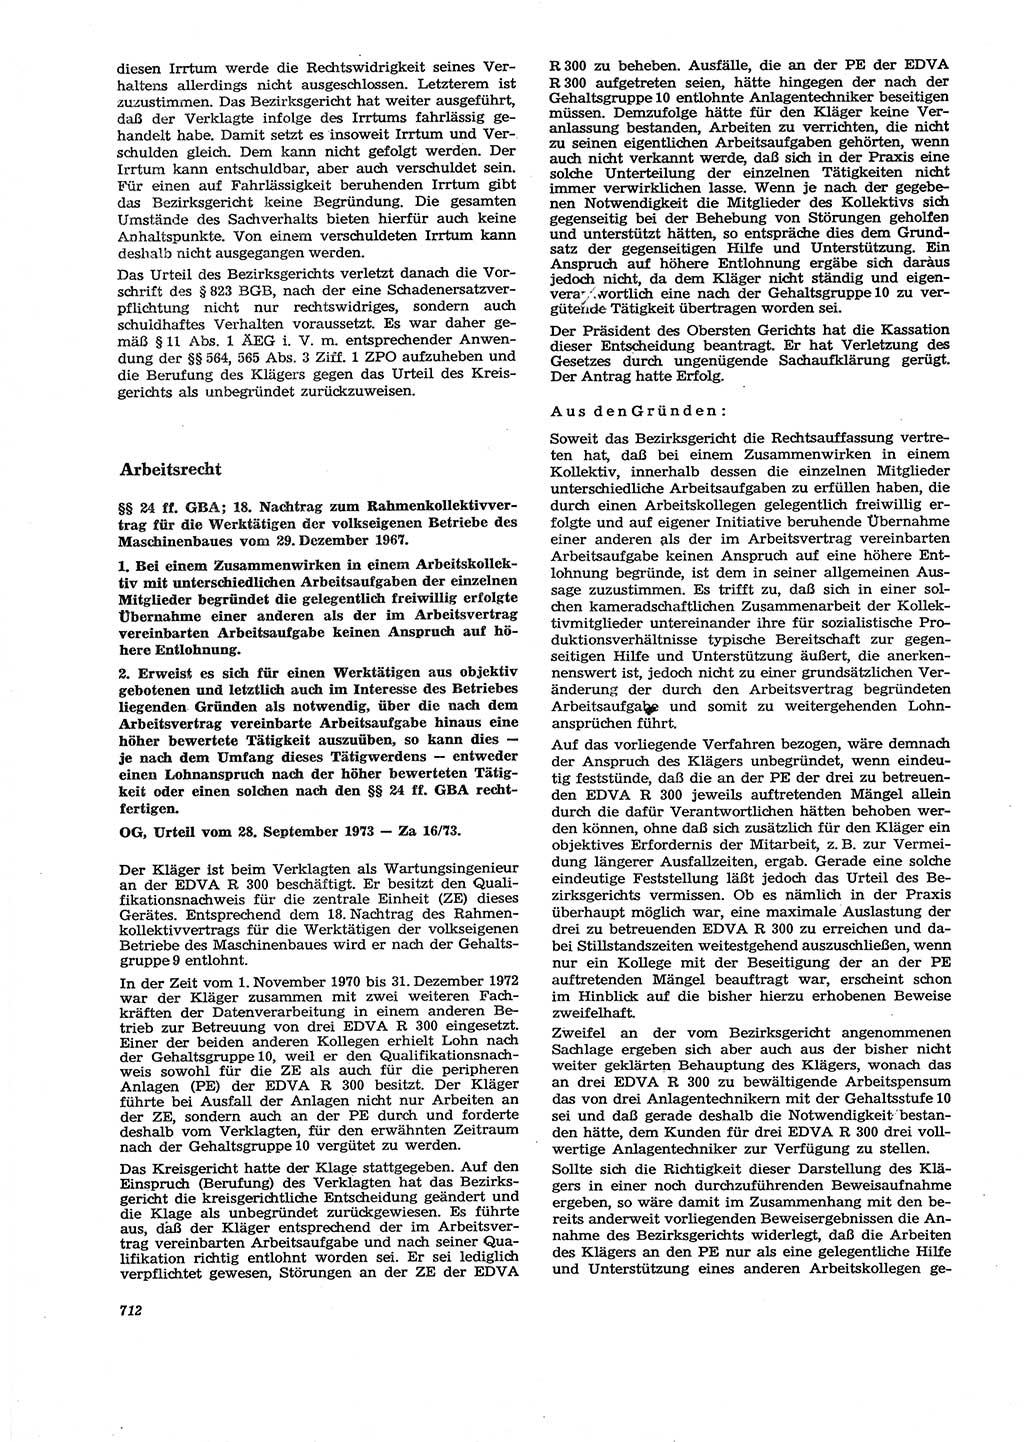 Neue Justiz (NJ), Zeitschrift für Recht und Rechtswissenschaft [Deutsche Demokratische Republik (DDR)], 27. Jahrgang 1973, Seite 712 (NJ DDR 1973, S. 712)